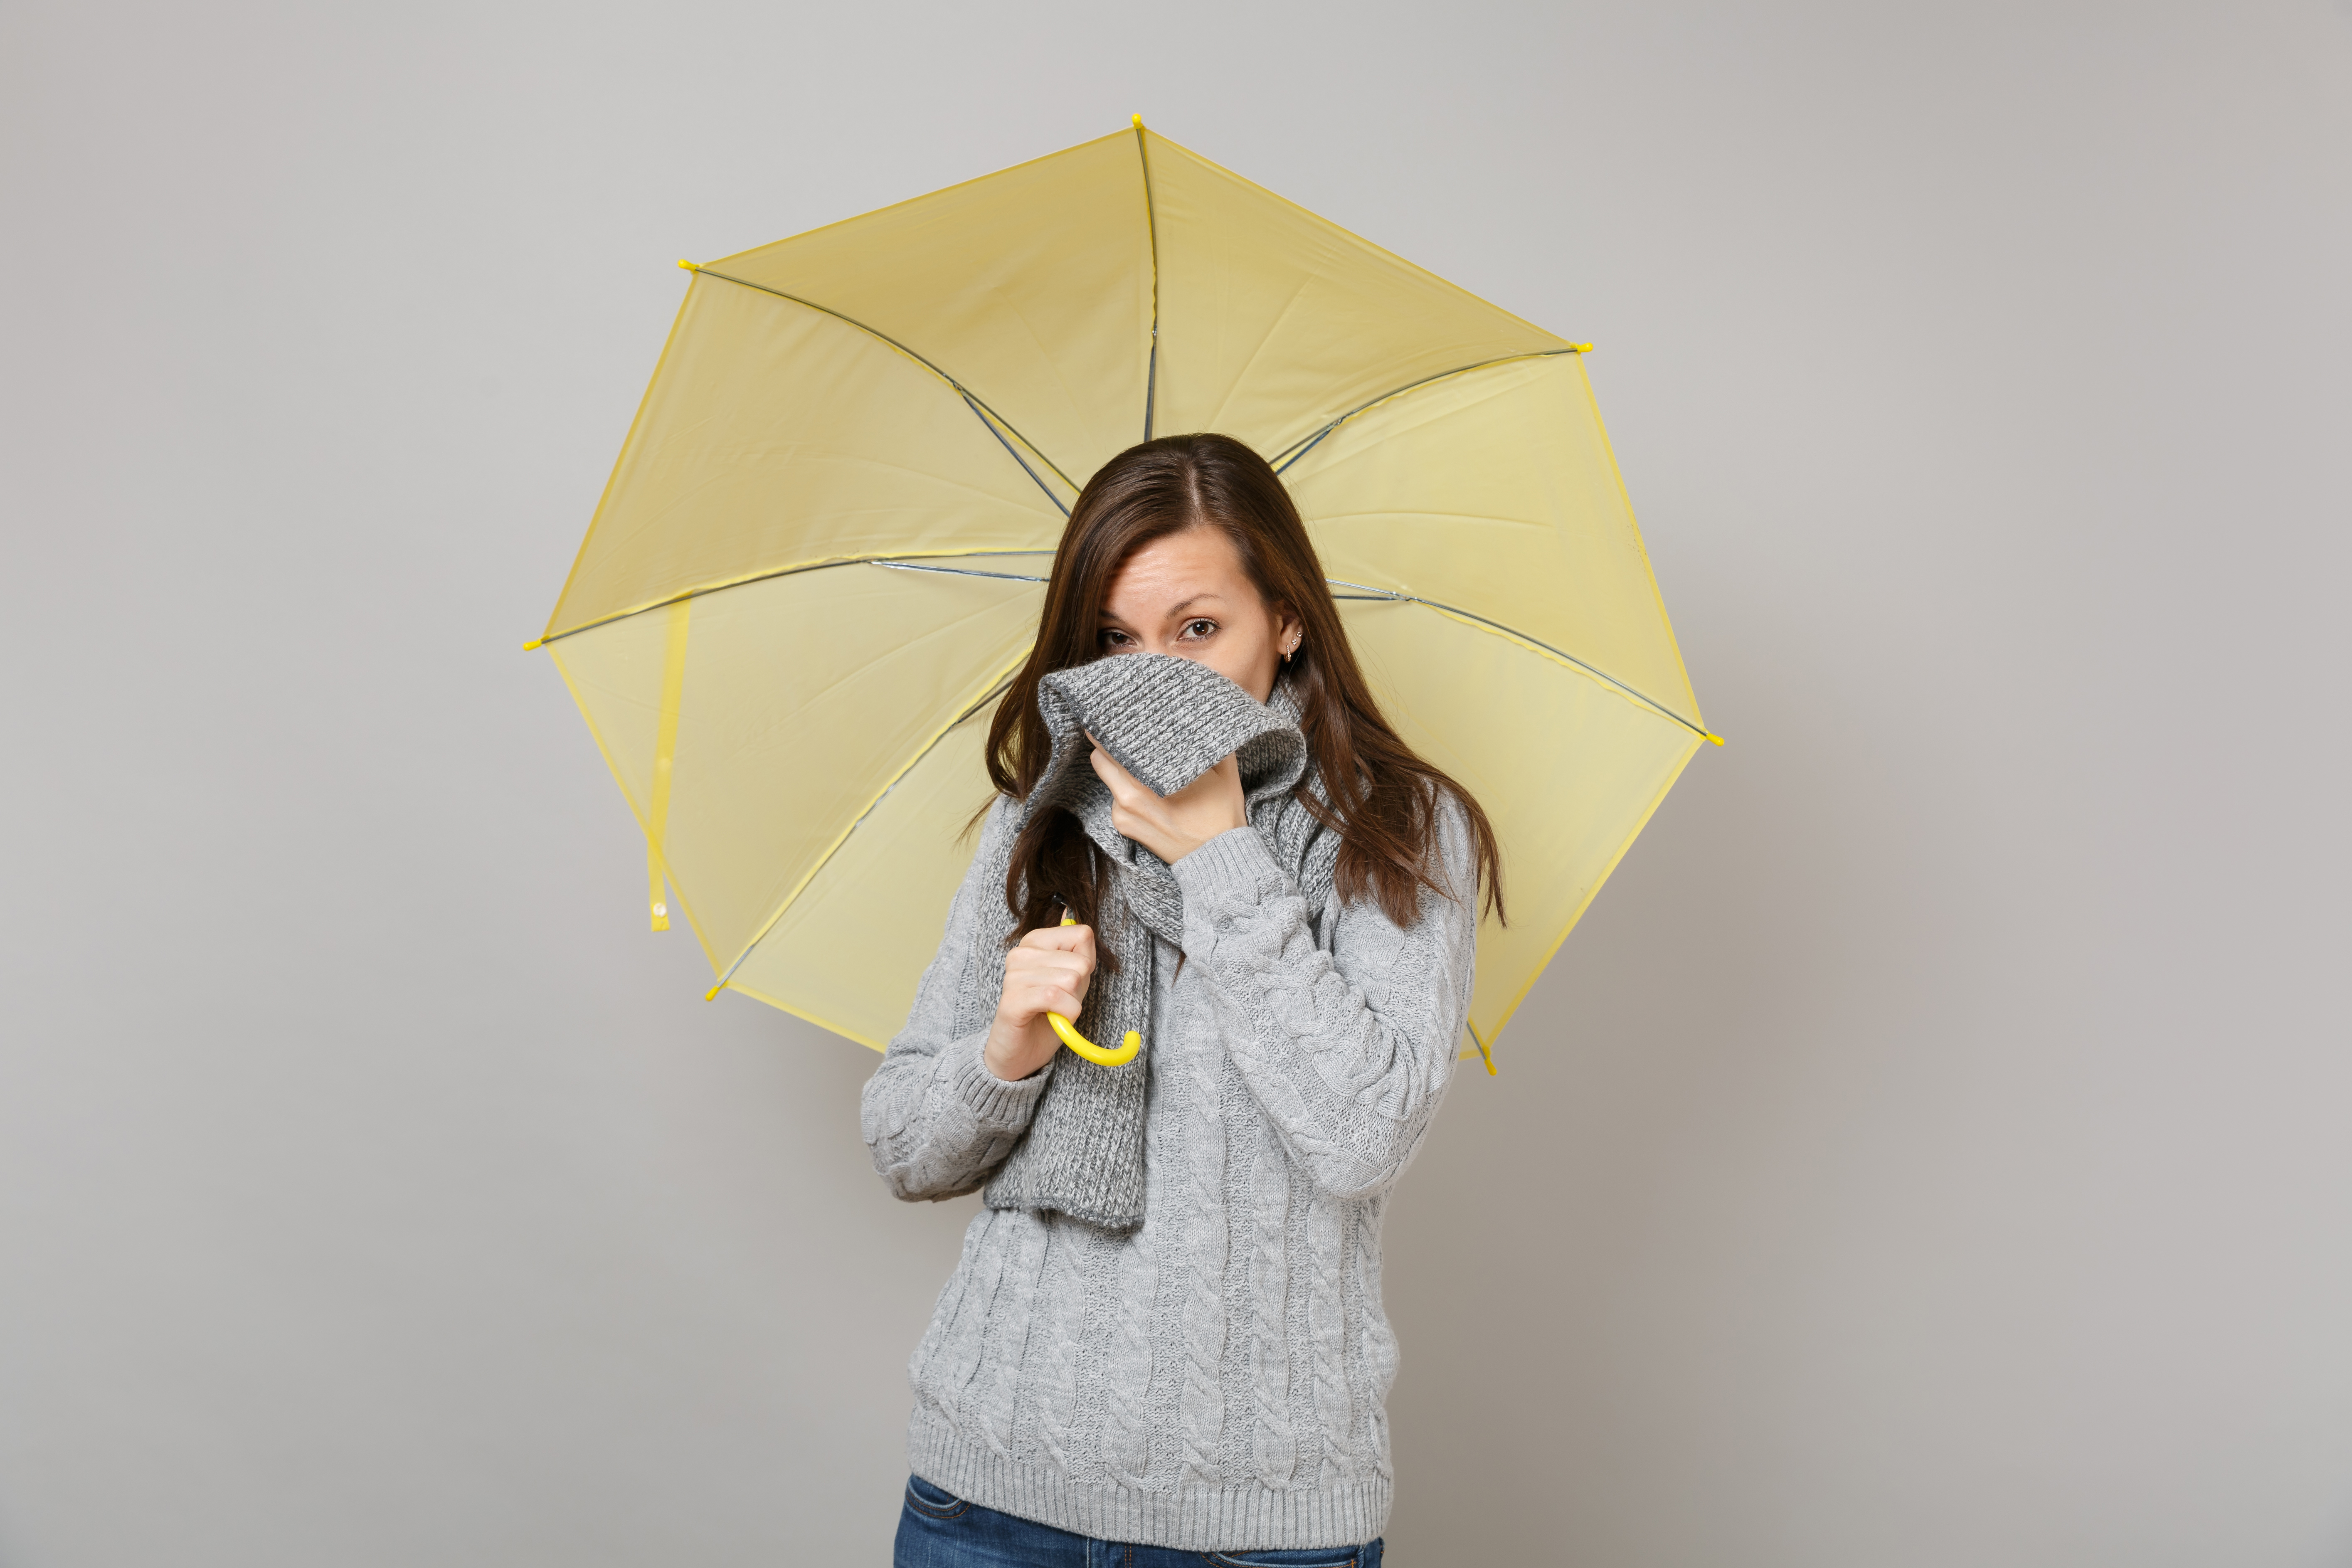 En tiempo de lluvia y frío aumentan los casos relacionados con enfermedades respiratorias. (Foto Prensa Libre: Shutterstock)